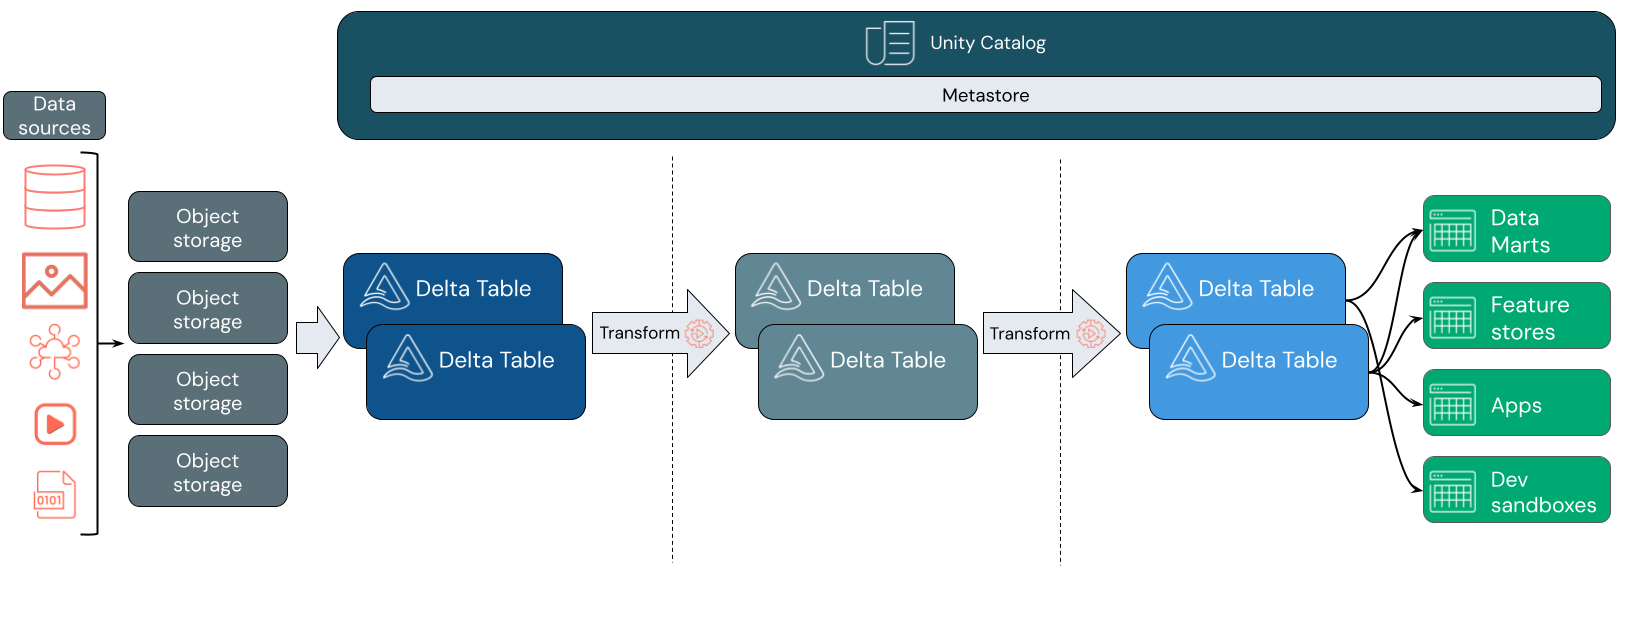 Um diagrama da arquitetura lakehouse usando Unity Catalog e tabelas delta.